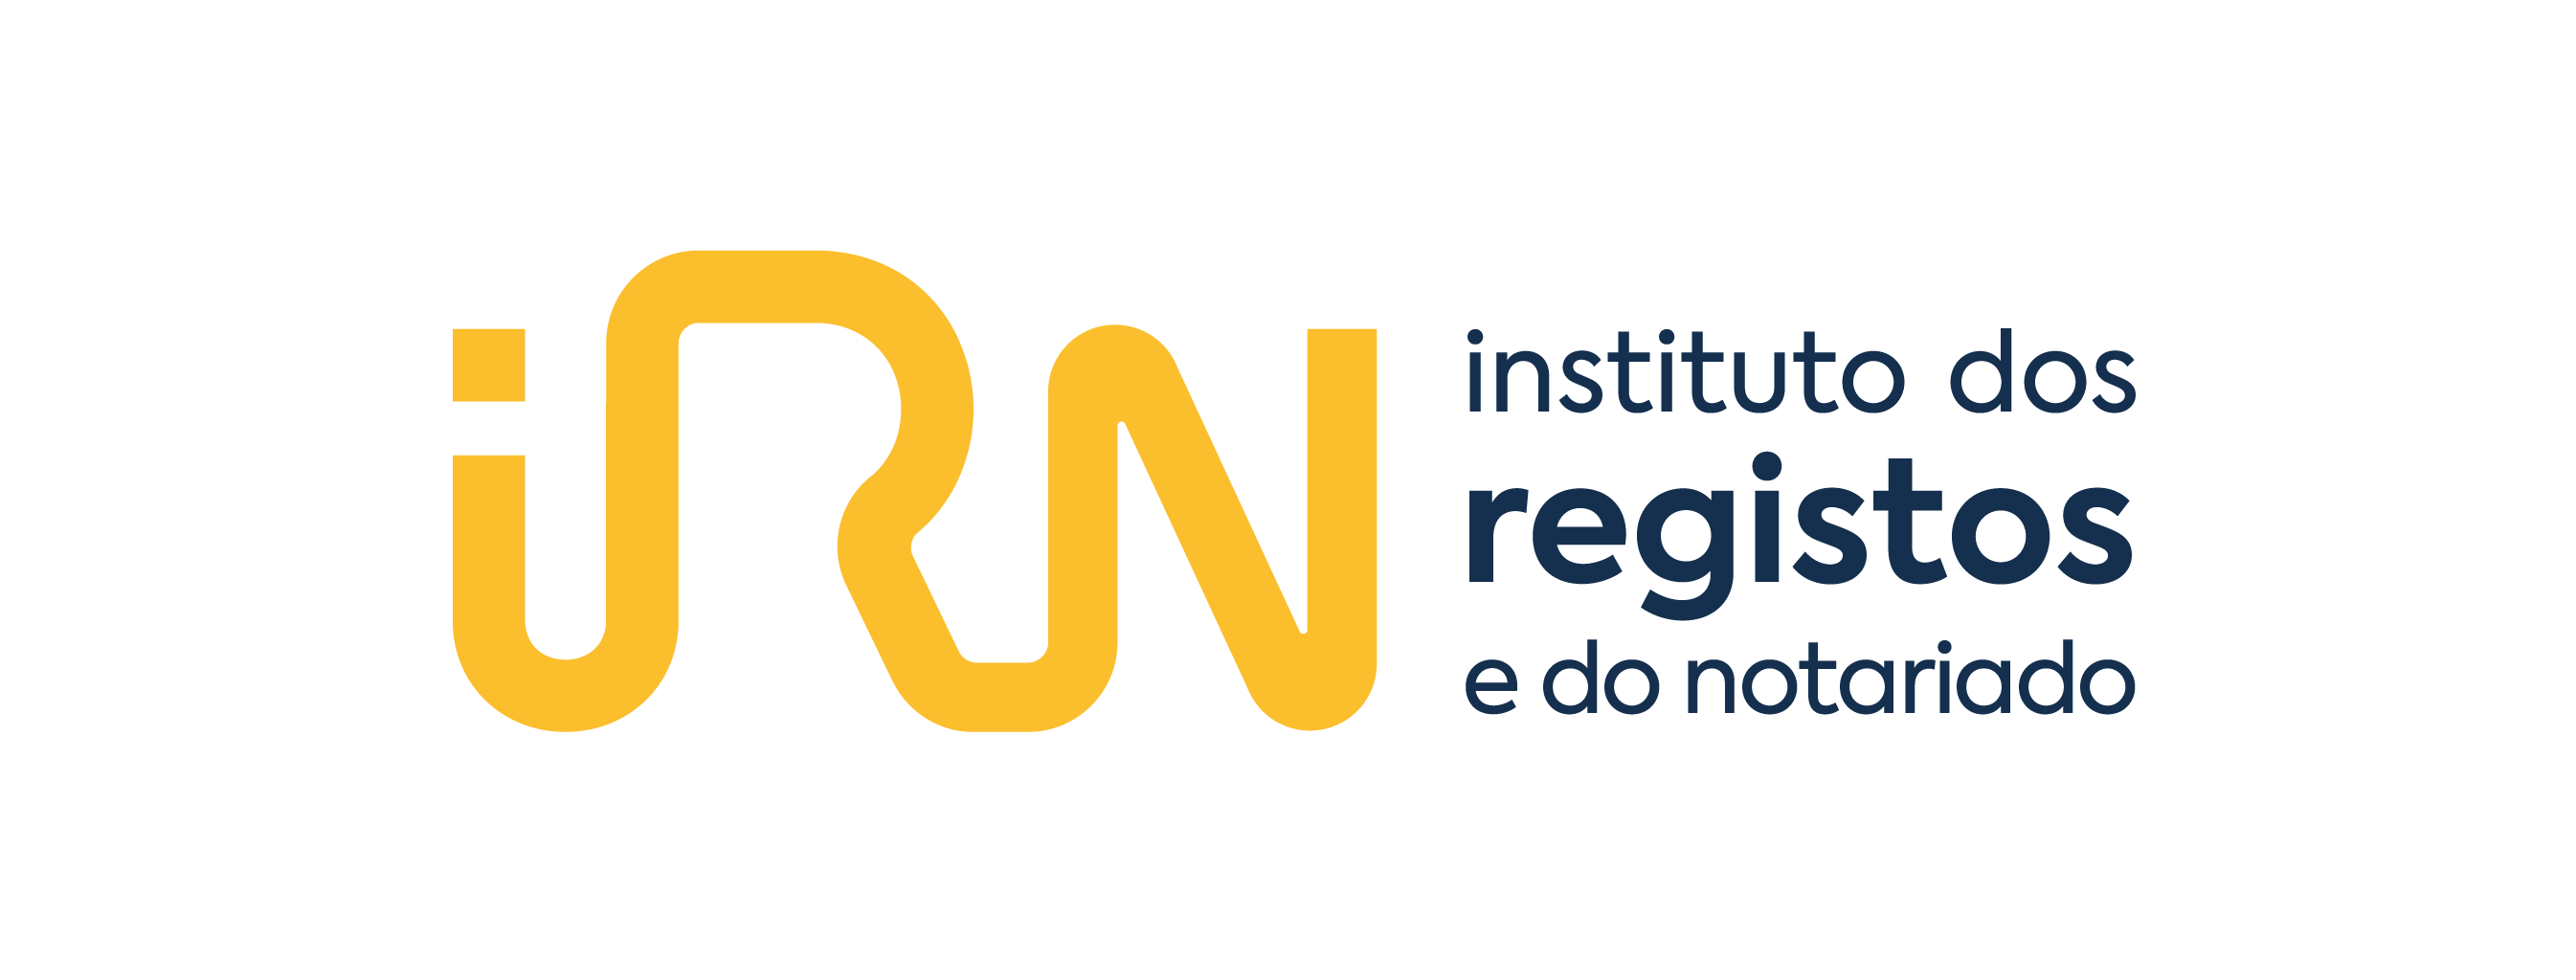 Logotipo Instituto dos Registos e do Notariado - ePortugal.gov.pt